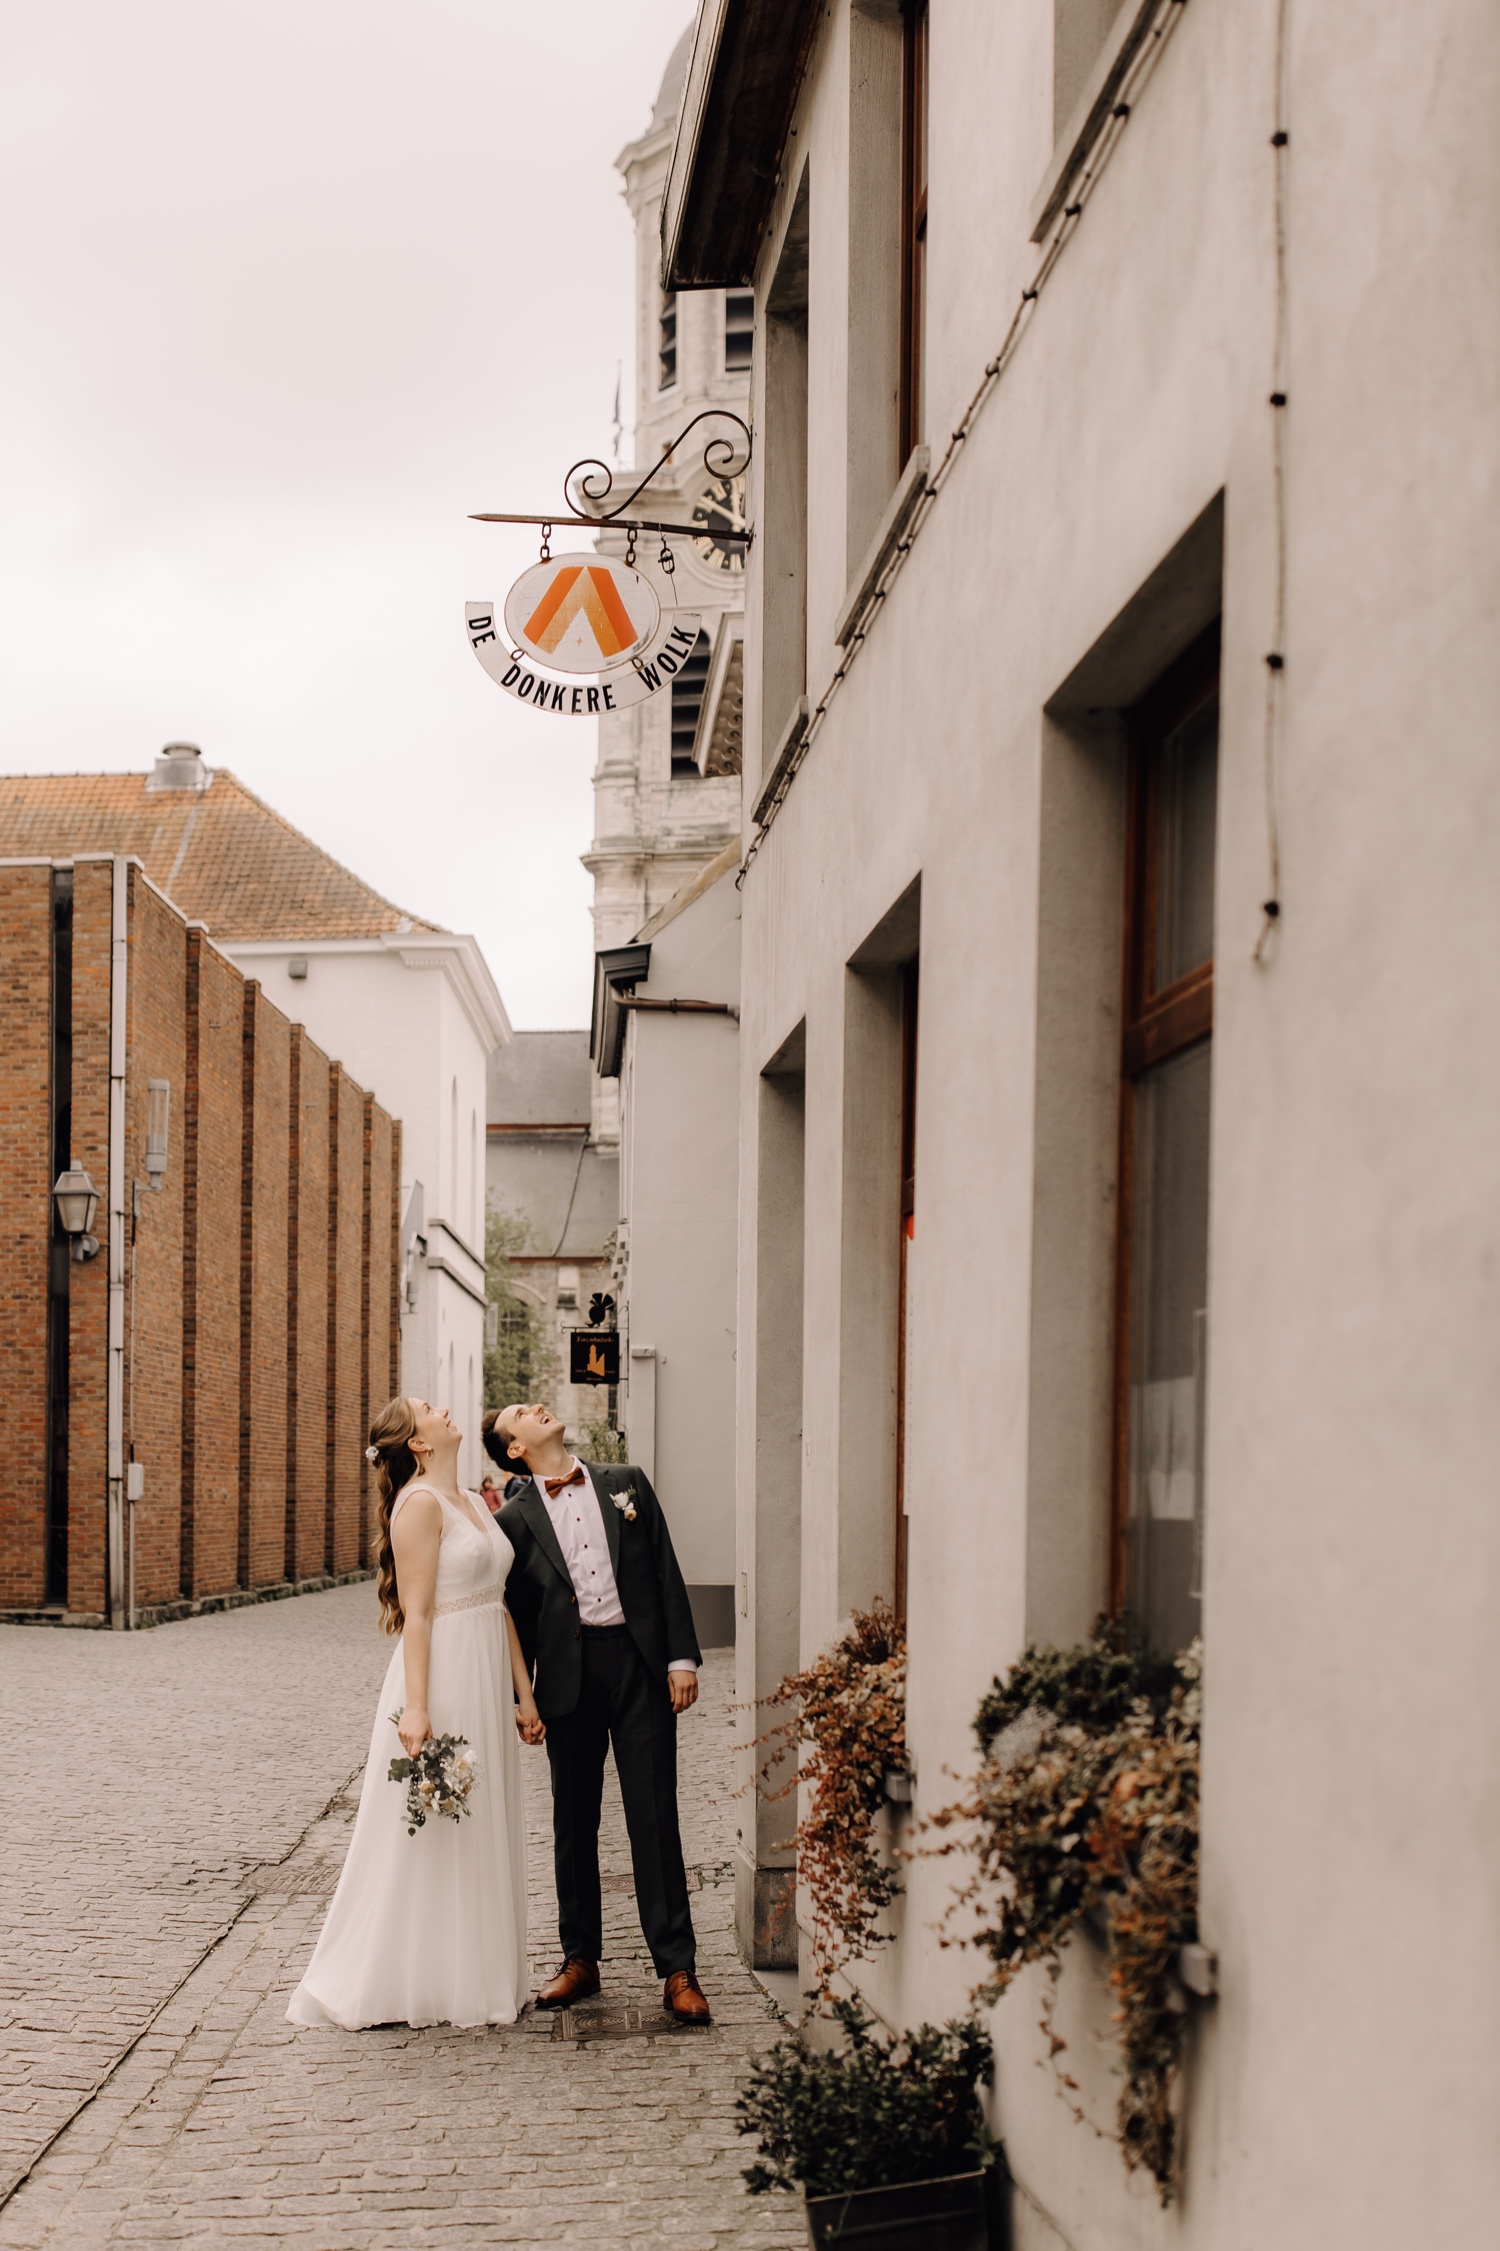 Huwelijksfotograaf Limburg - bruidspaar poseert voor hun favoriete café in Lokeren